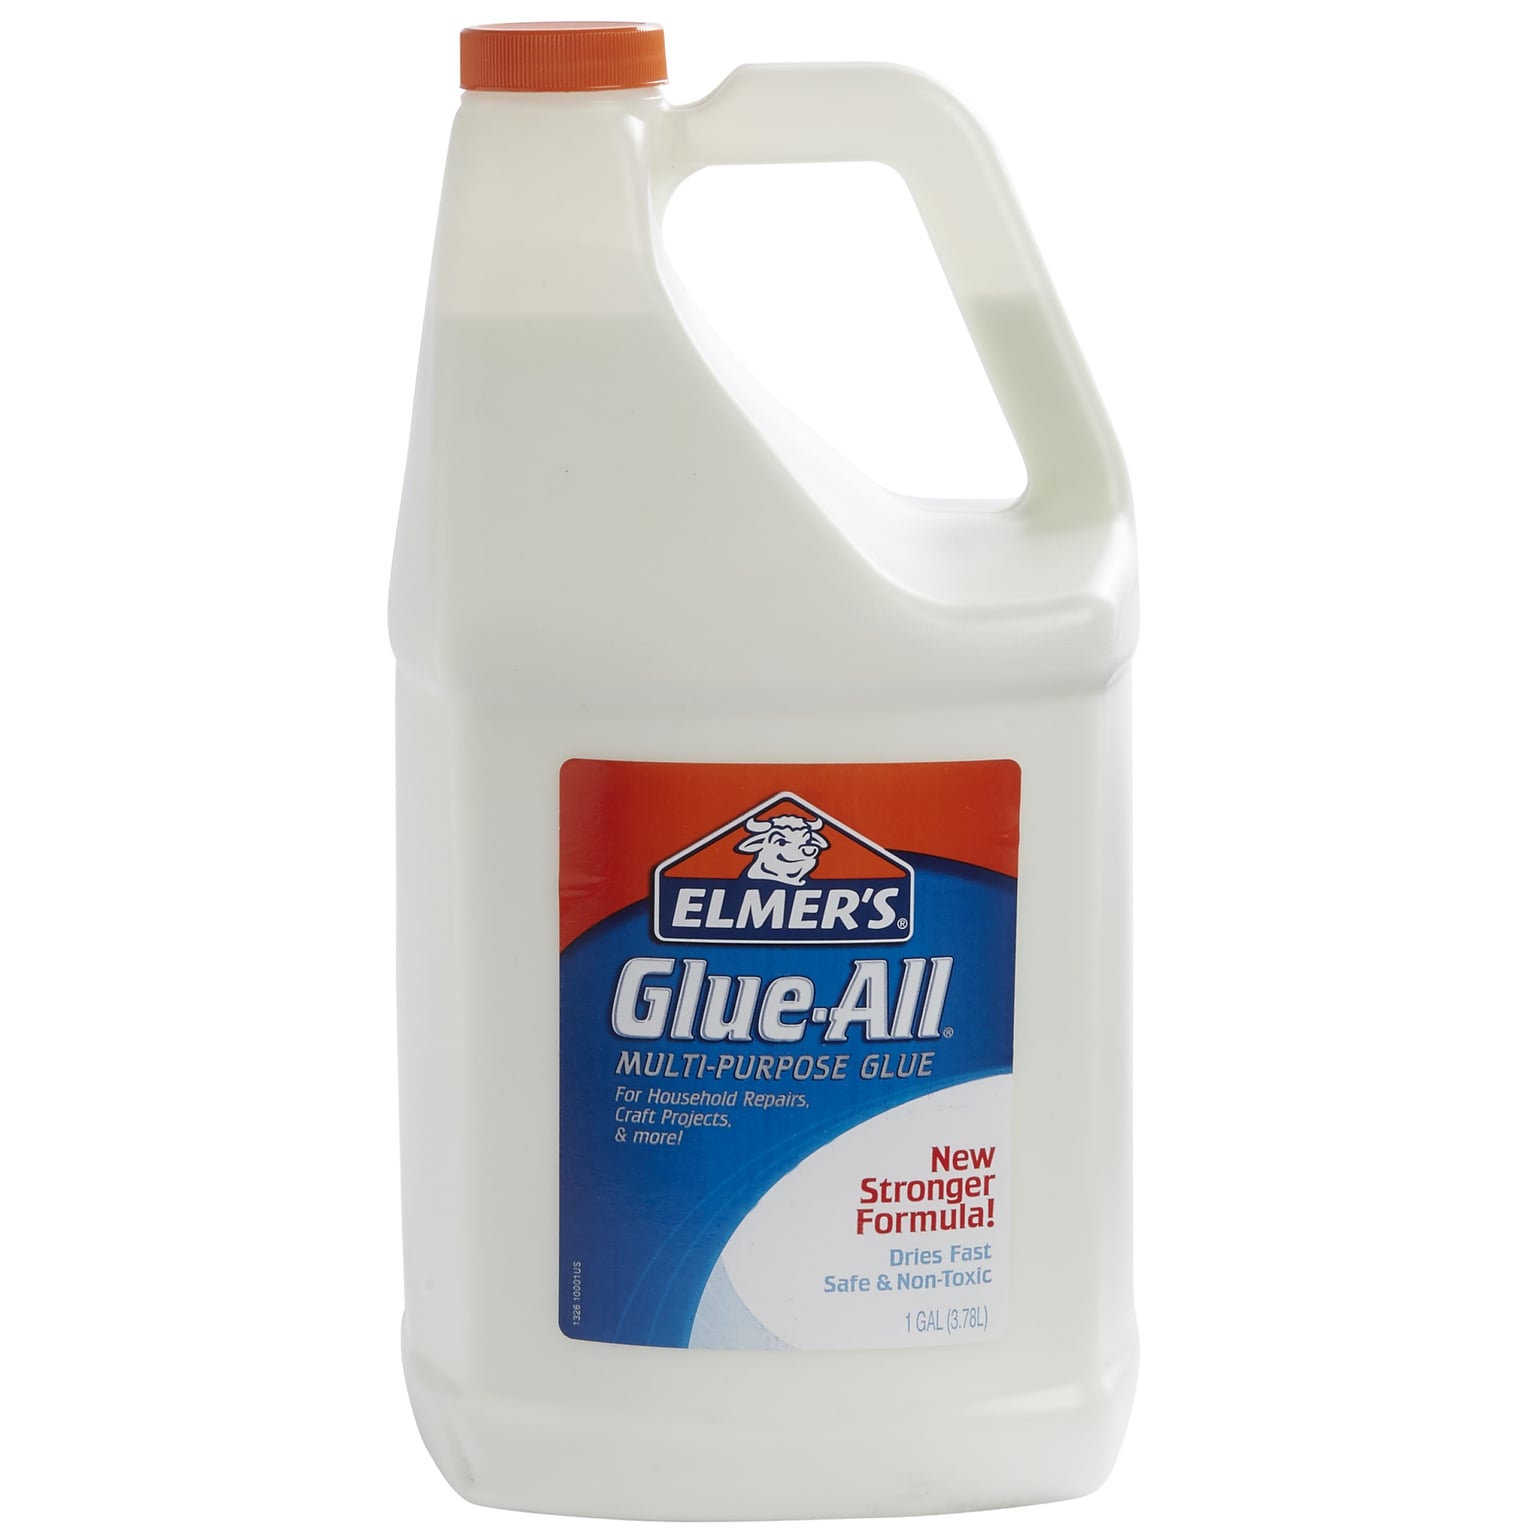 Elmers Glue-All Craft Glue, 128 oz., White (E1326)